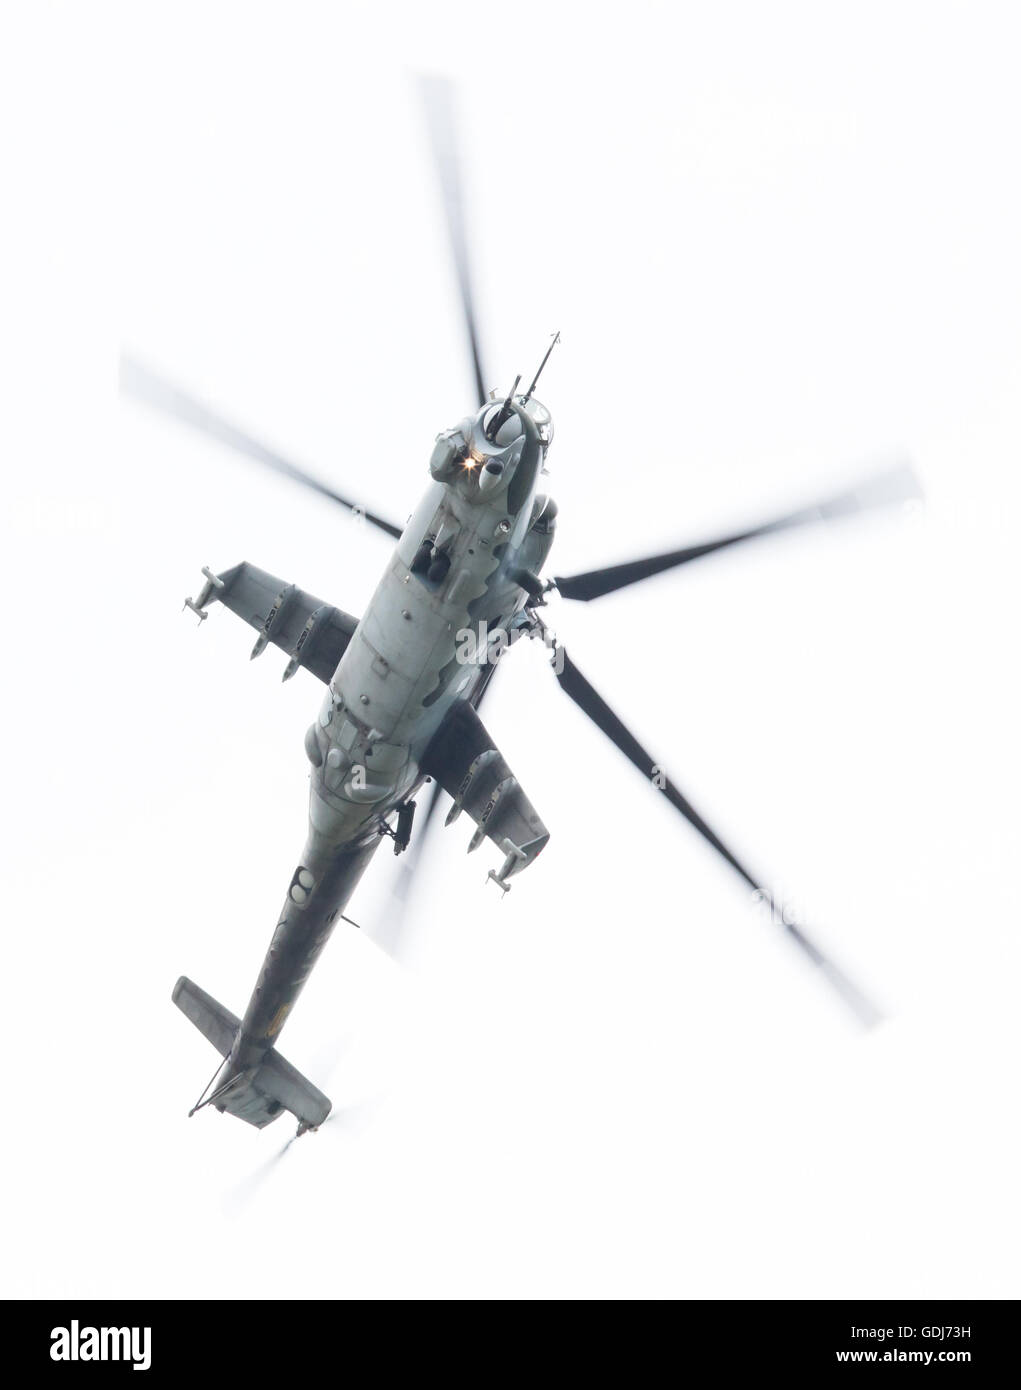 LEEUWARDEN, Niederlande - 10. Juni 2016: Tschechische Republik Luftwaffe Mil Mi-24 Hind Kampfhubschrauber Durchführung einer demonstration Stockfoto